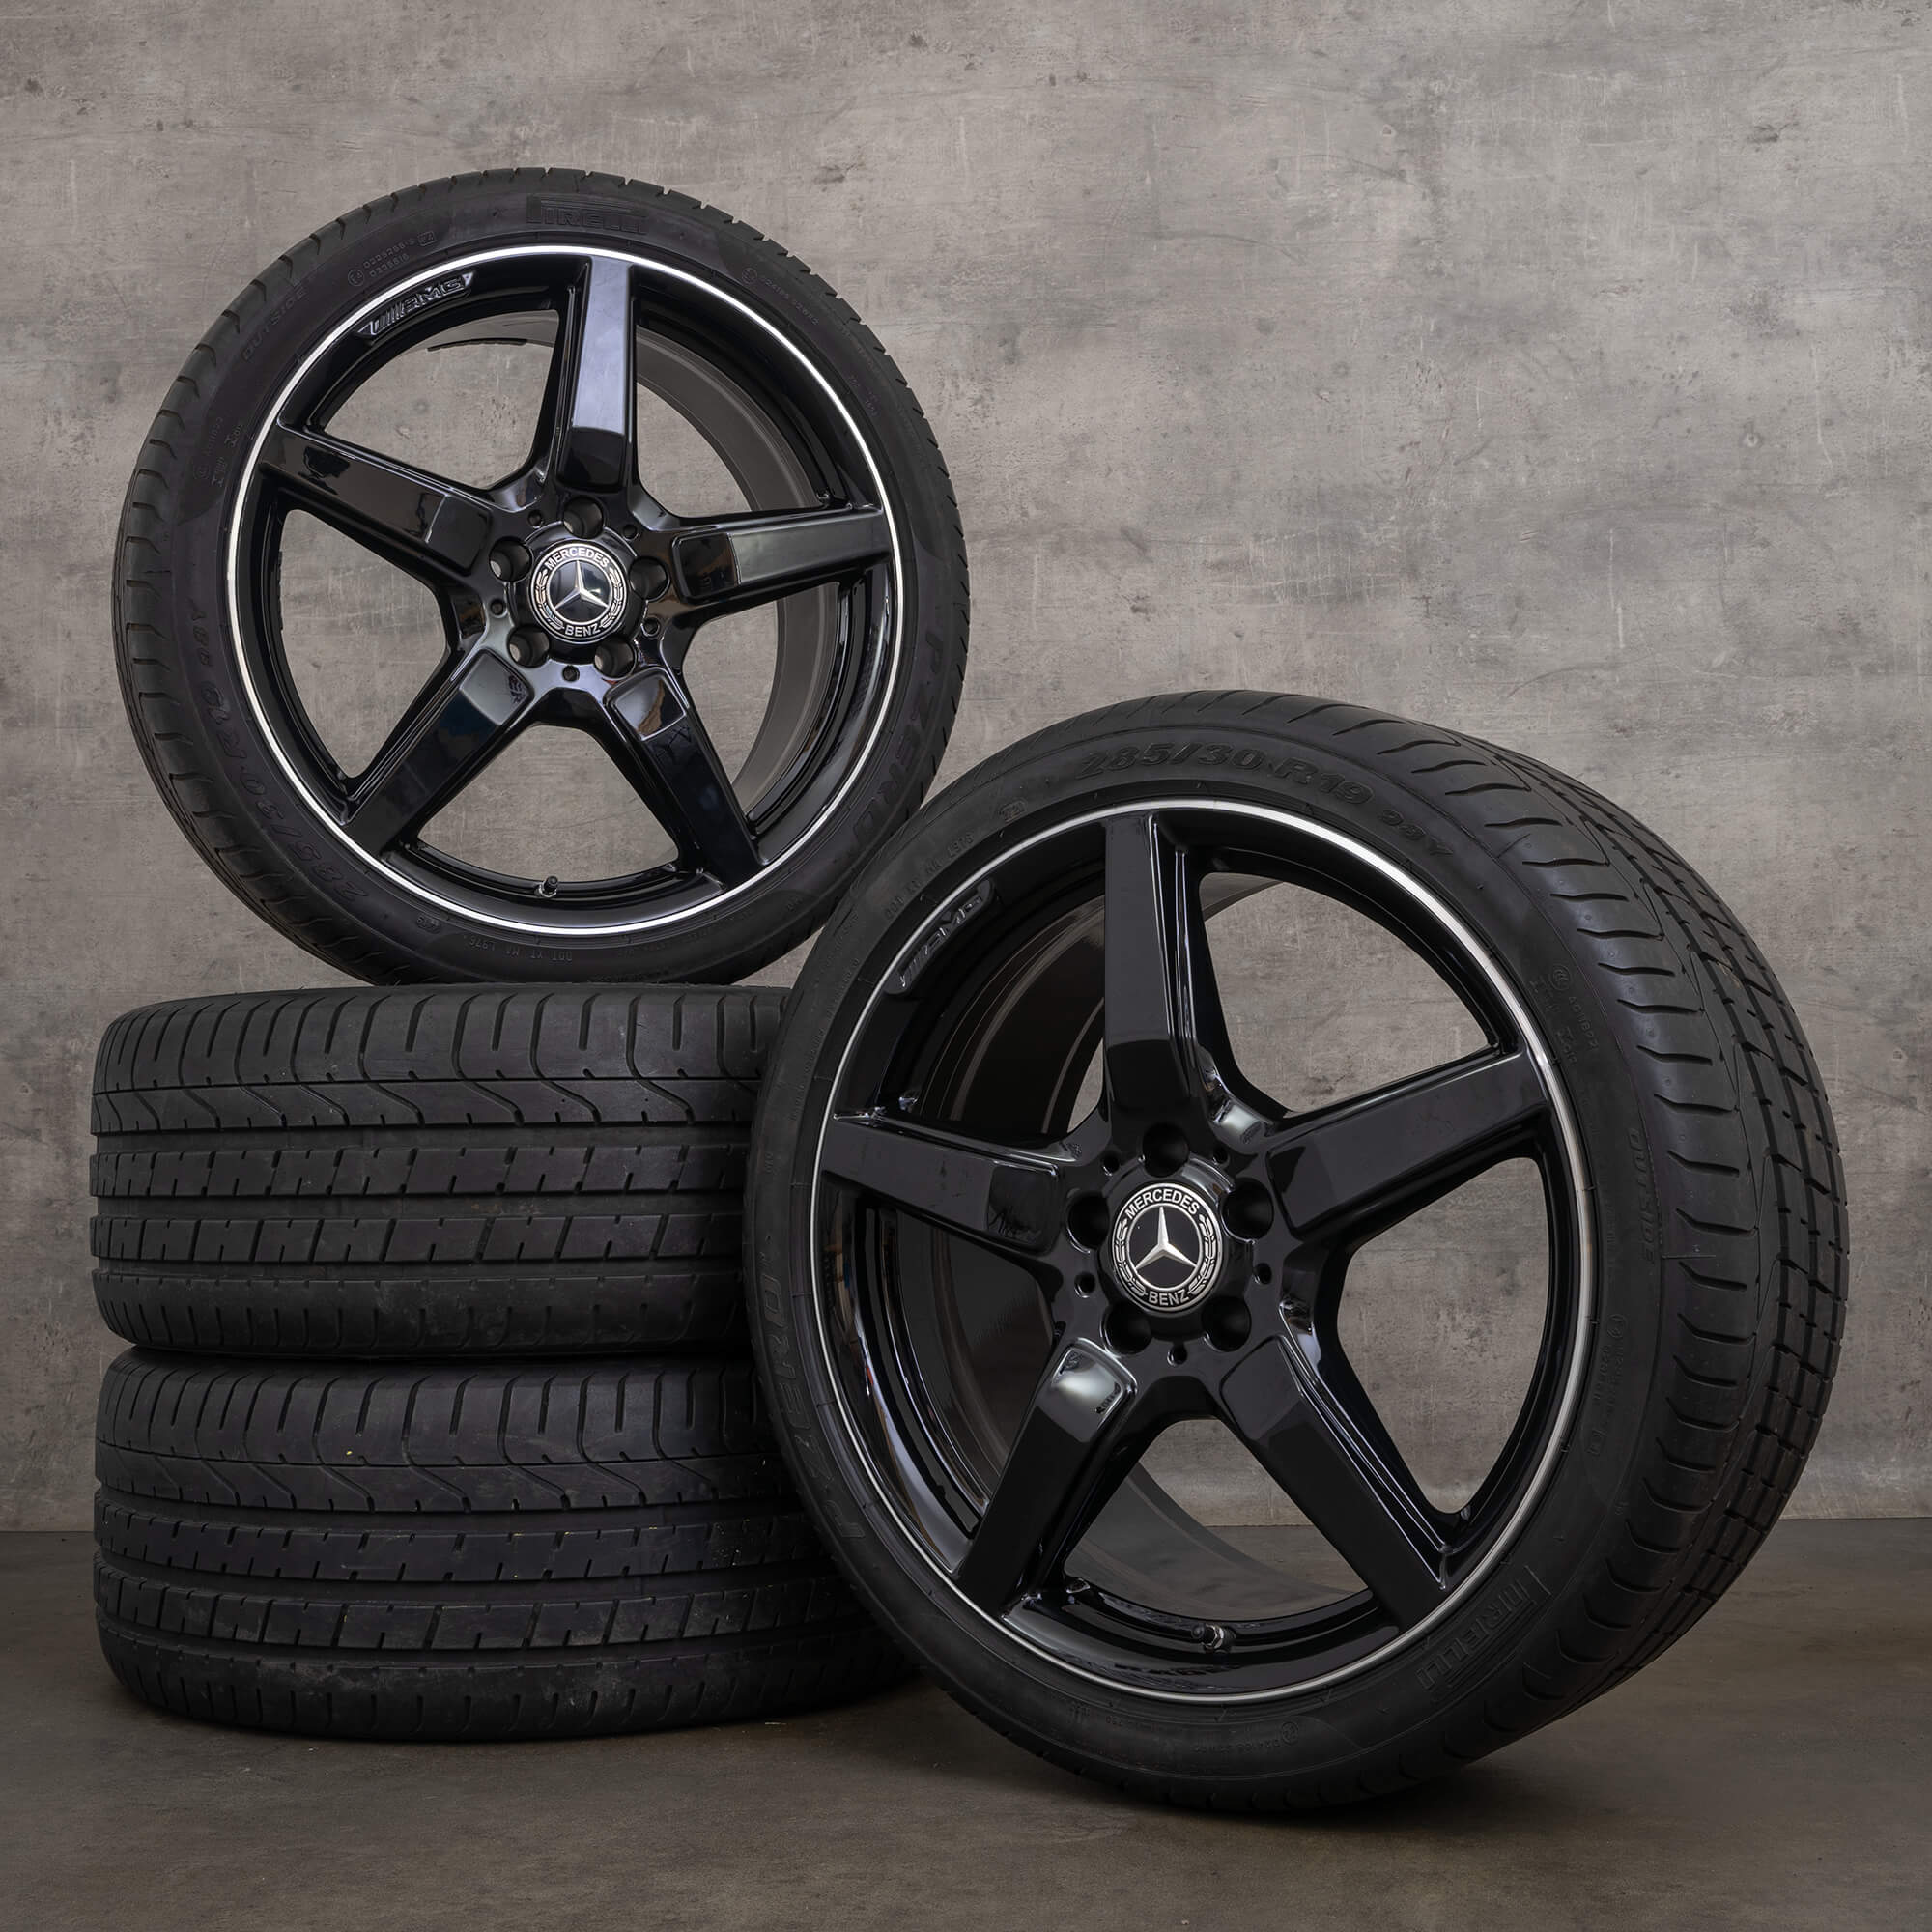 Jantes de pneus verão originais AMG Mercedes CLS C218 X218 19 polegadas